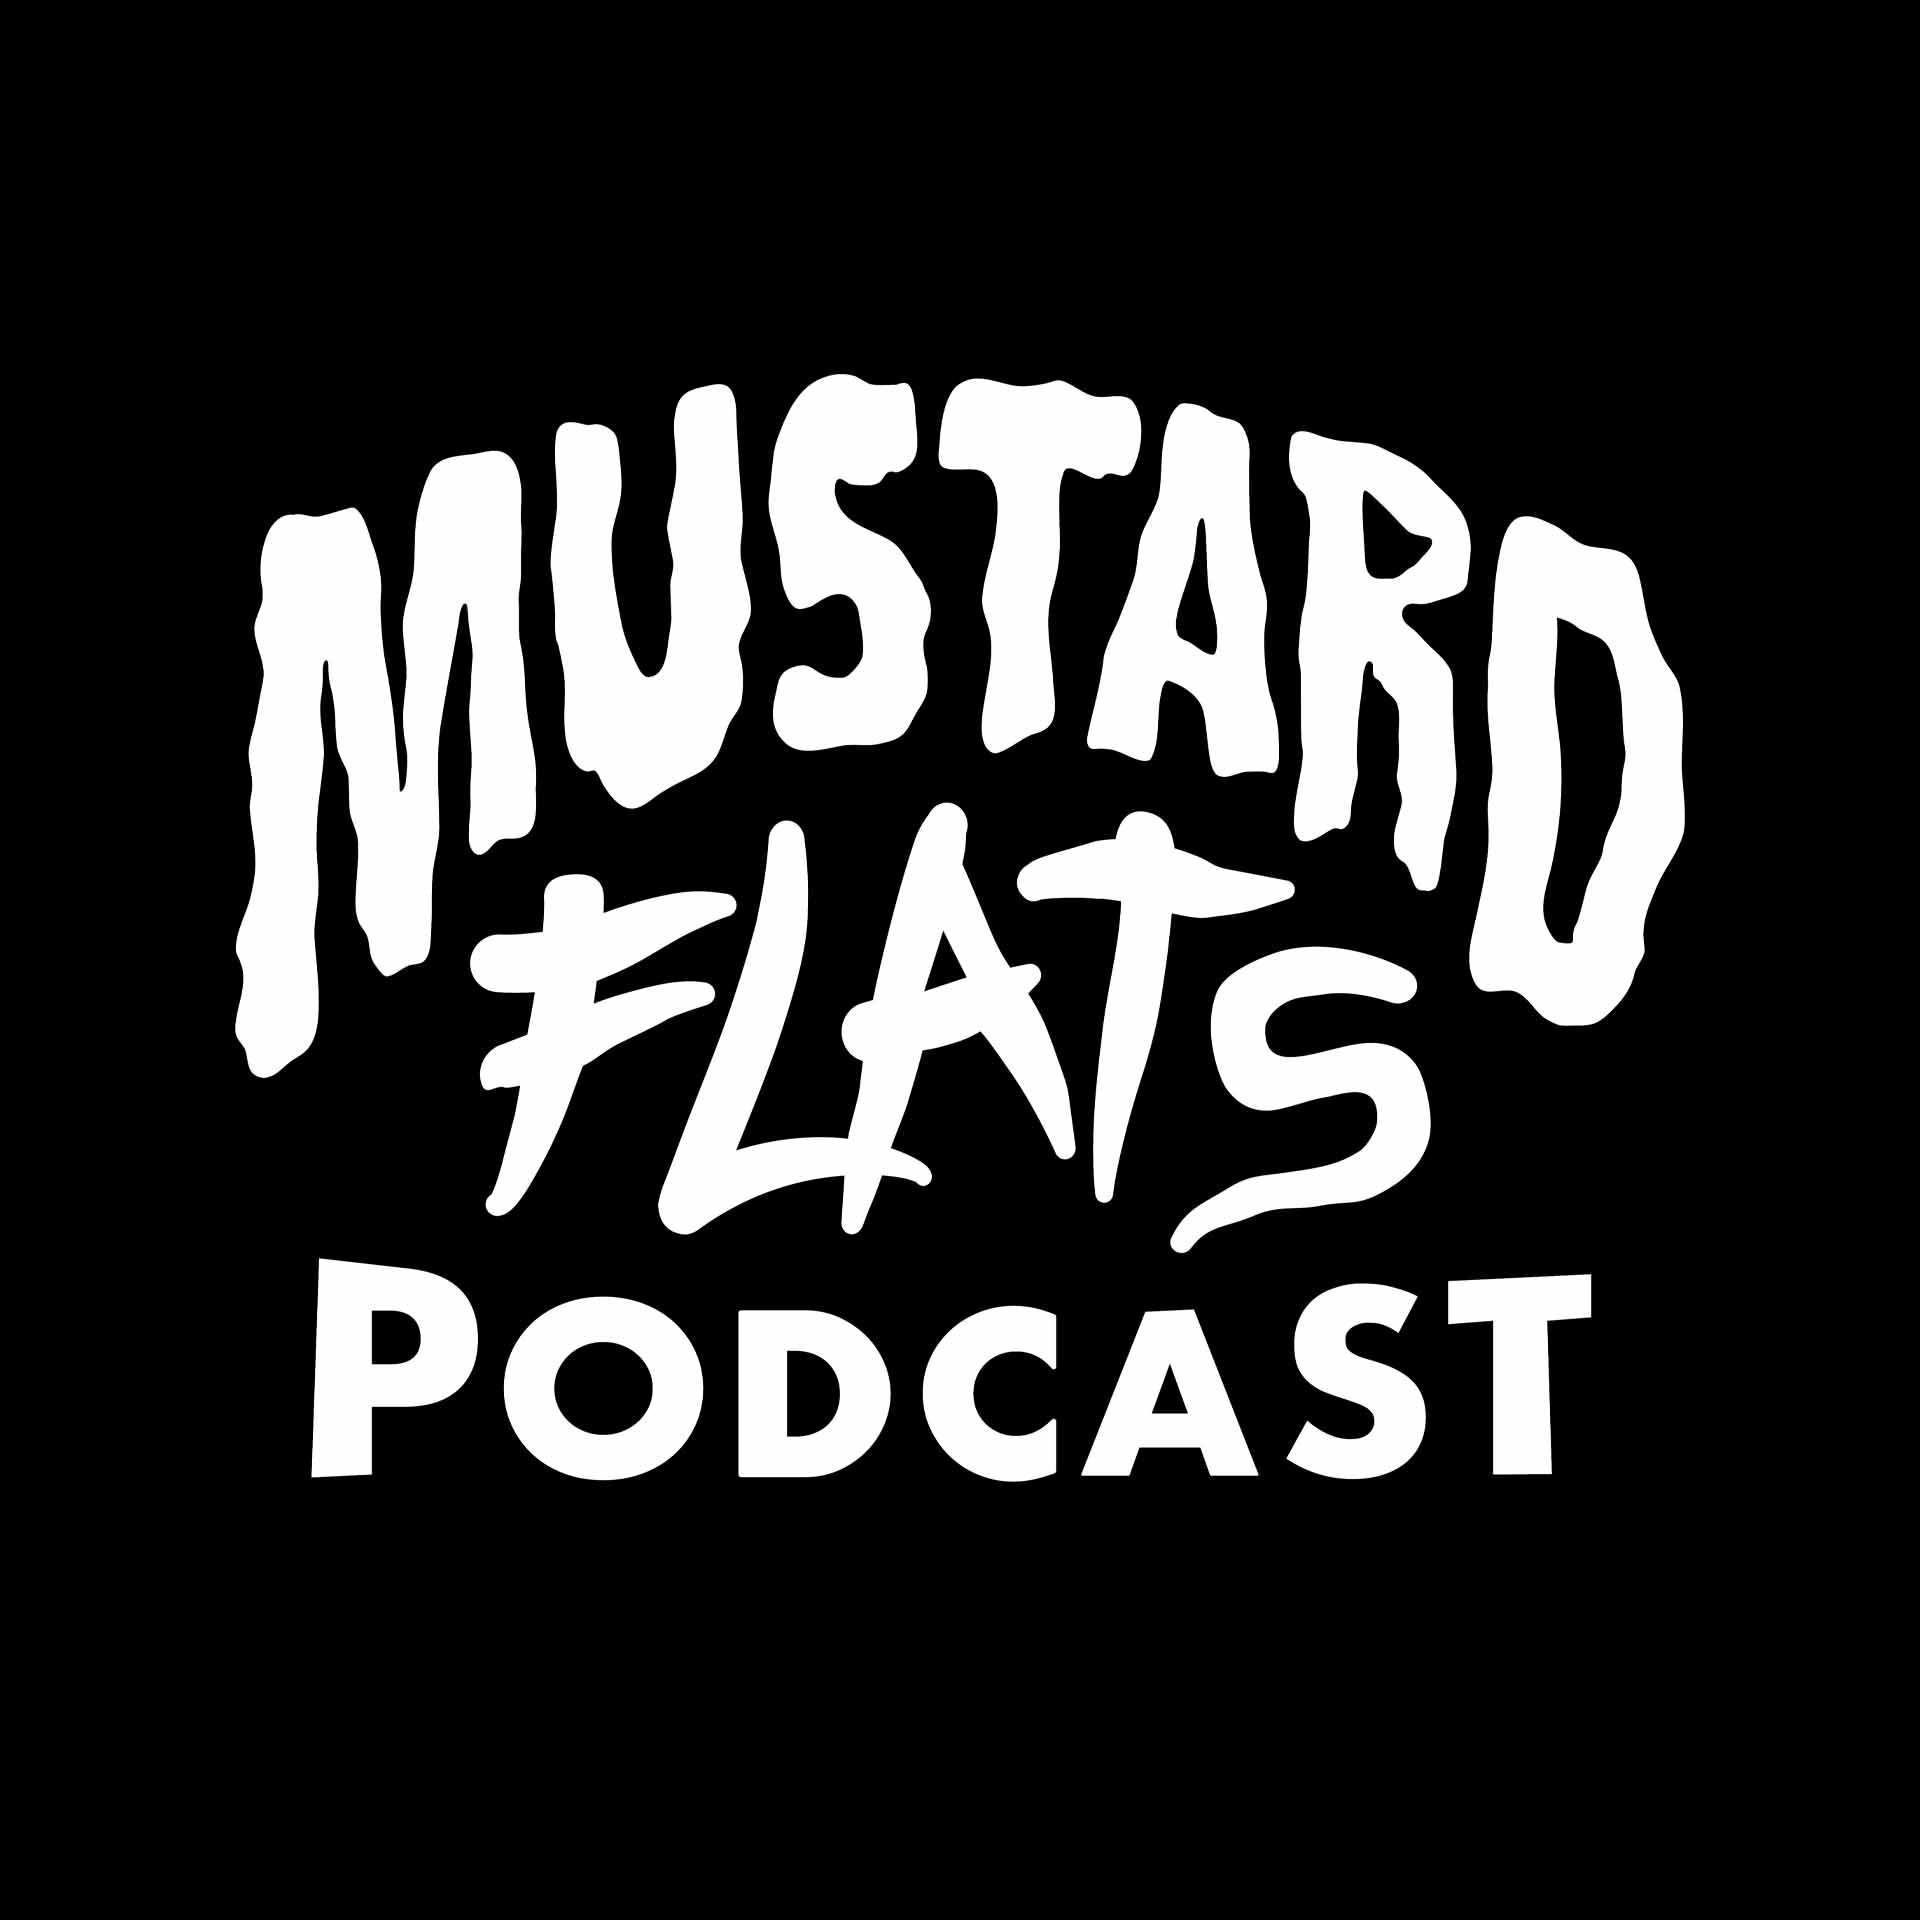 Mustard Flats